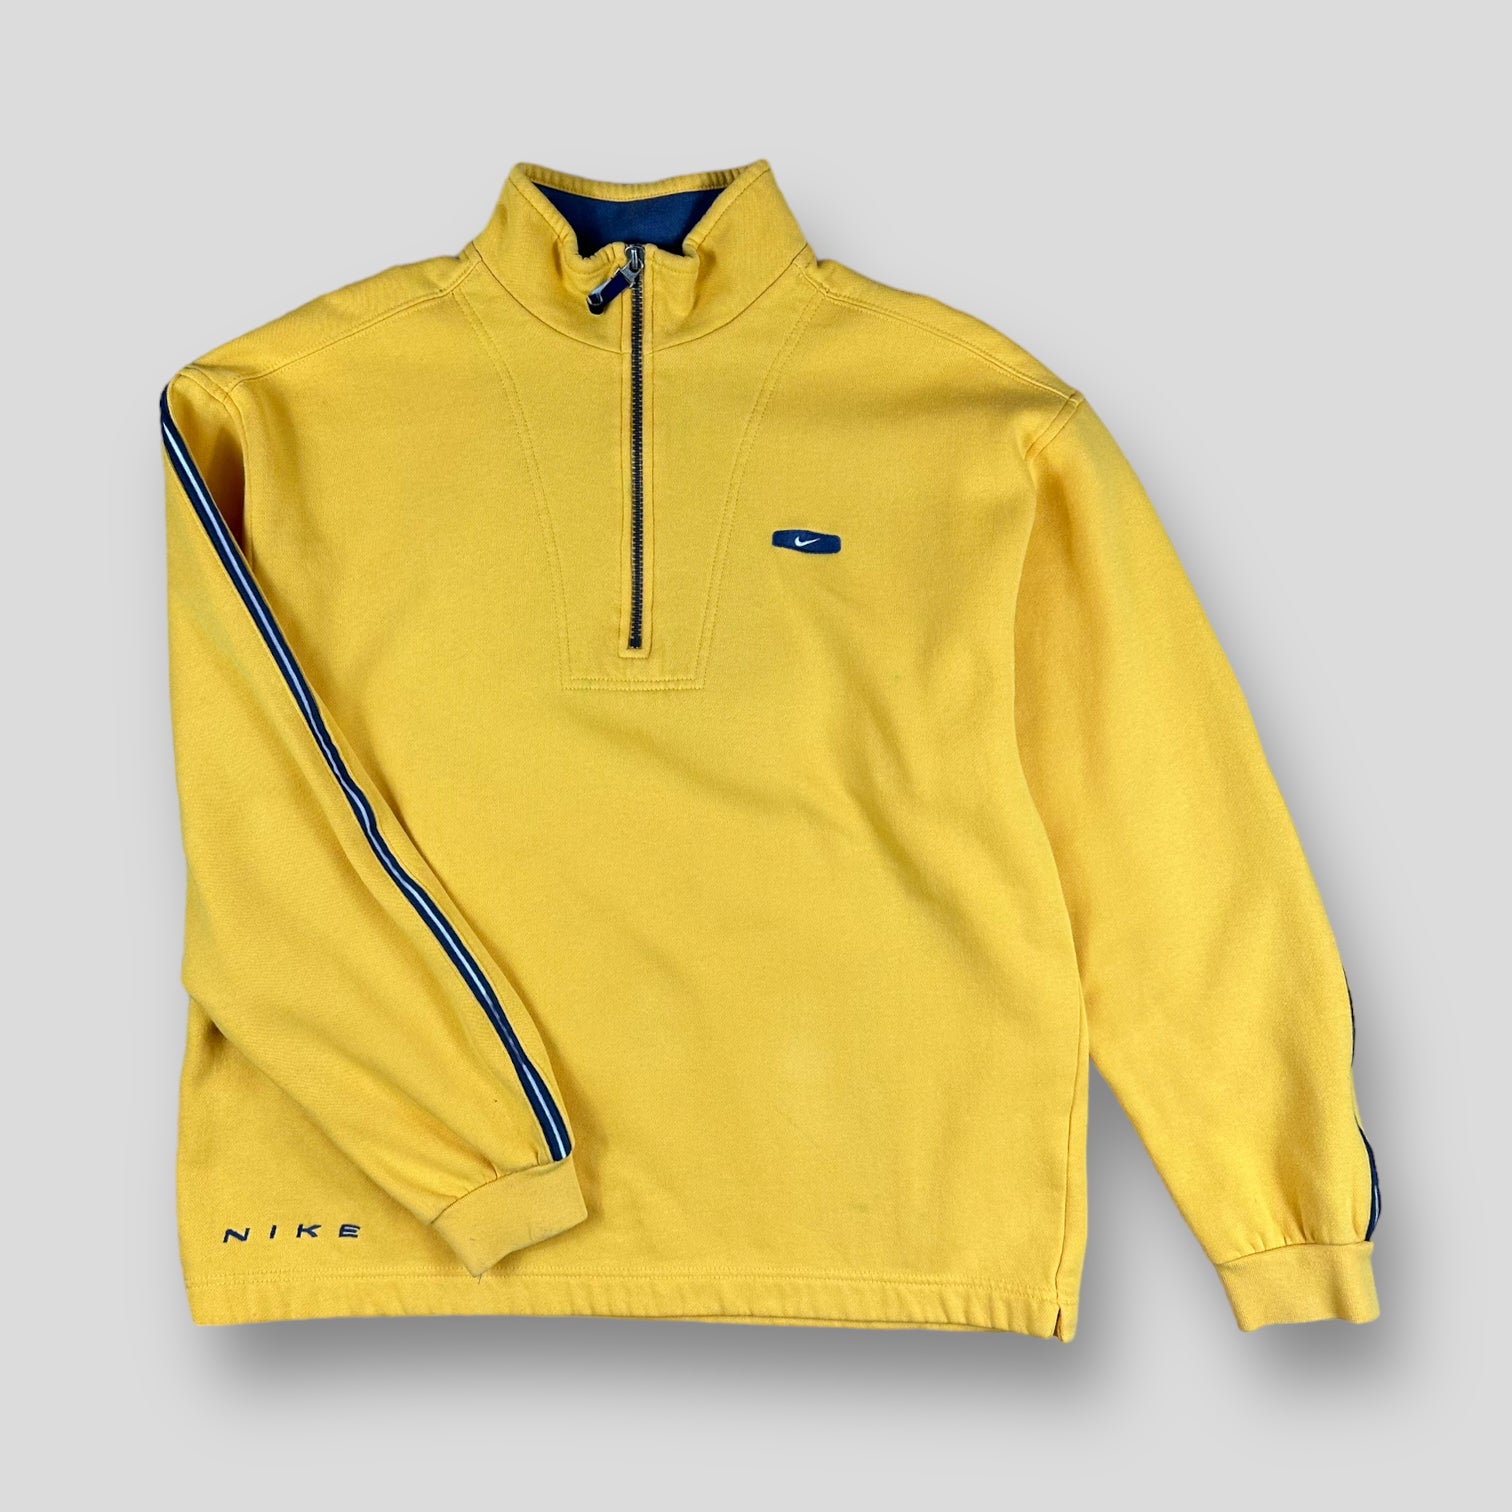 Nike quarter zip sweatshirt